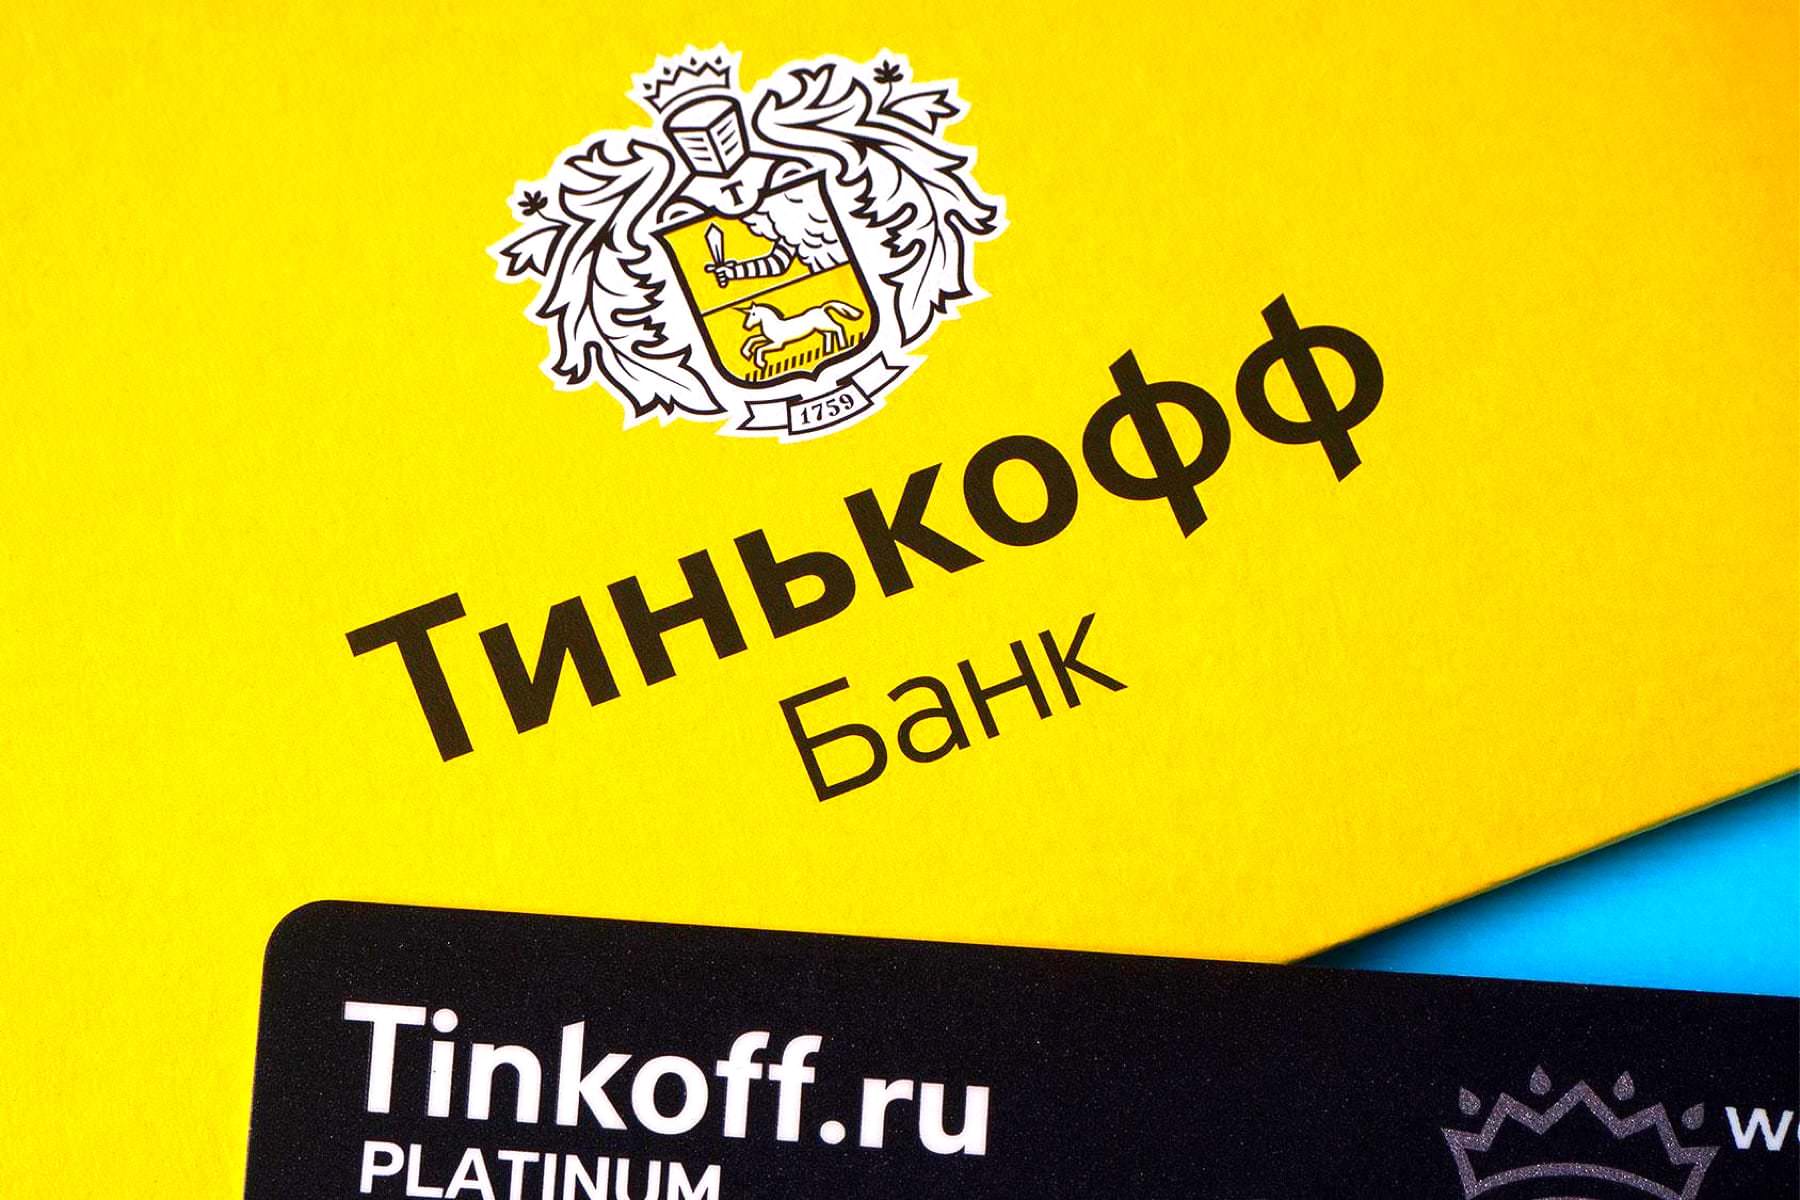 Регистрация ИП через Тинькофф банк: просто, удобно и надежно